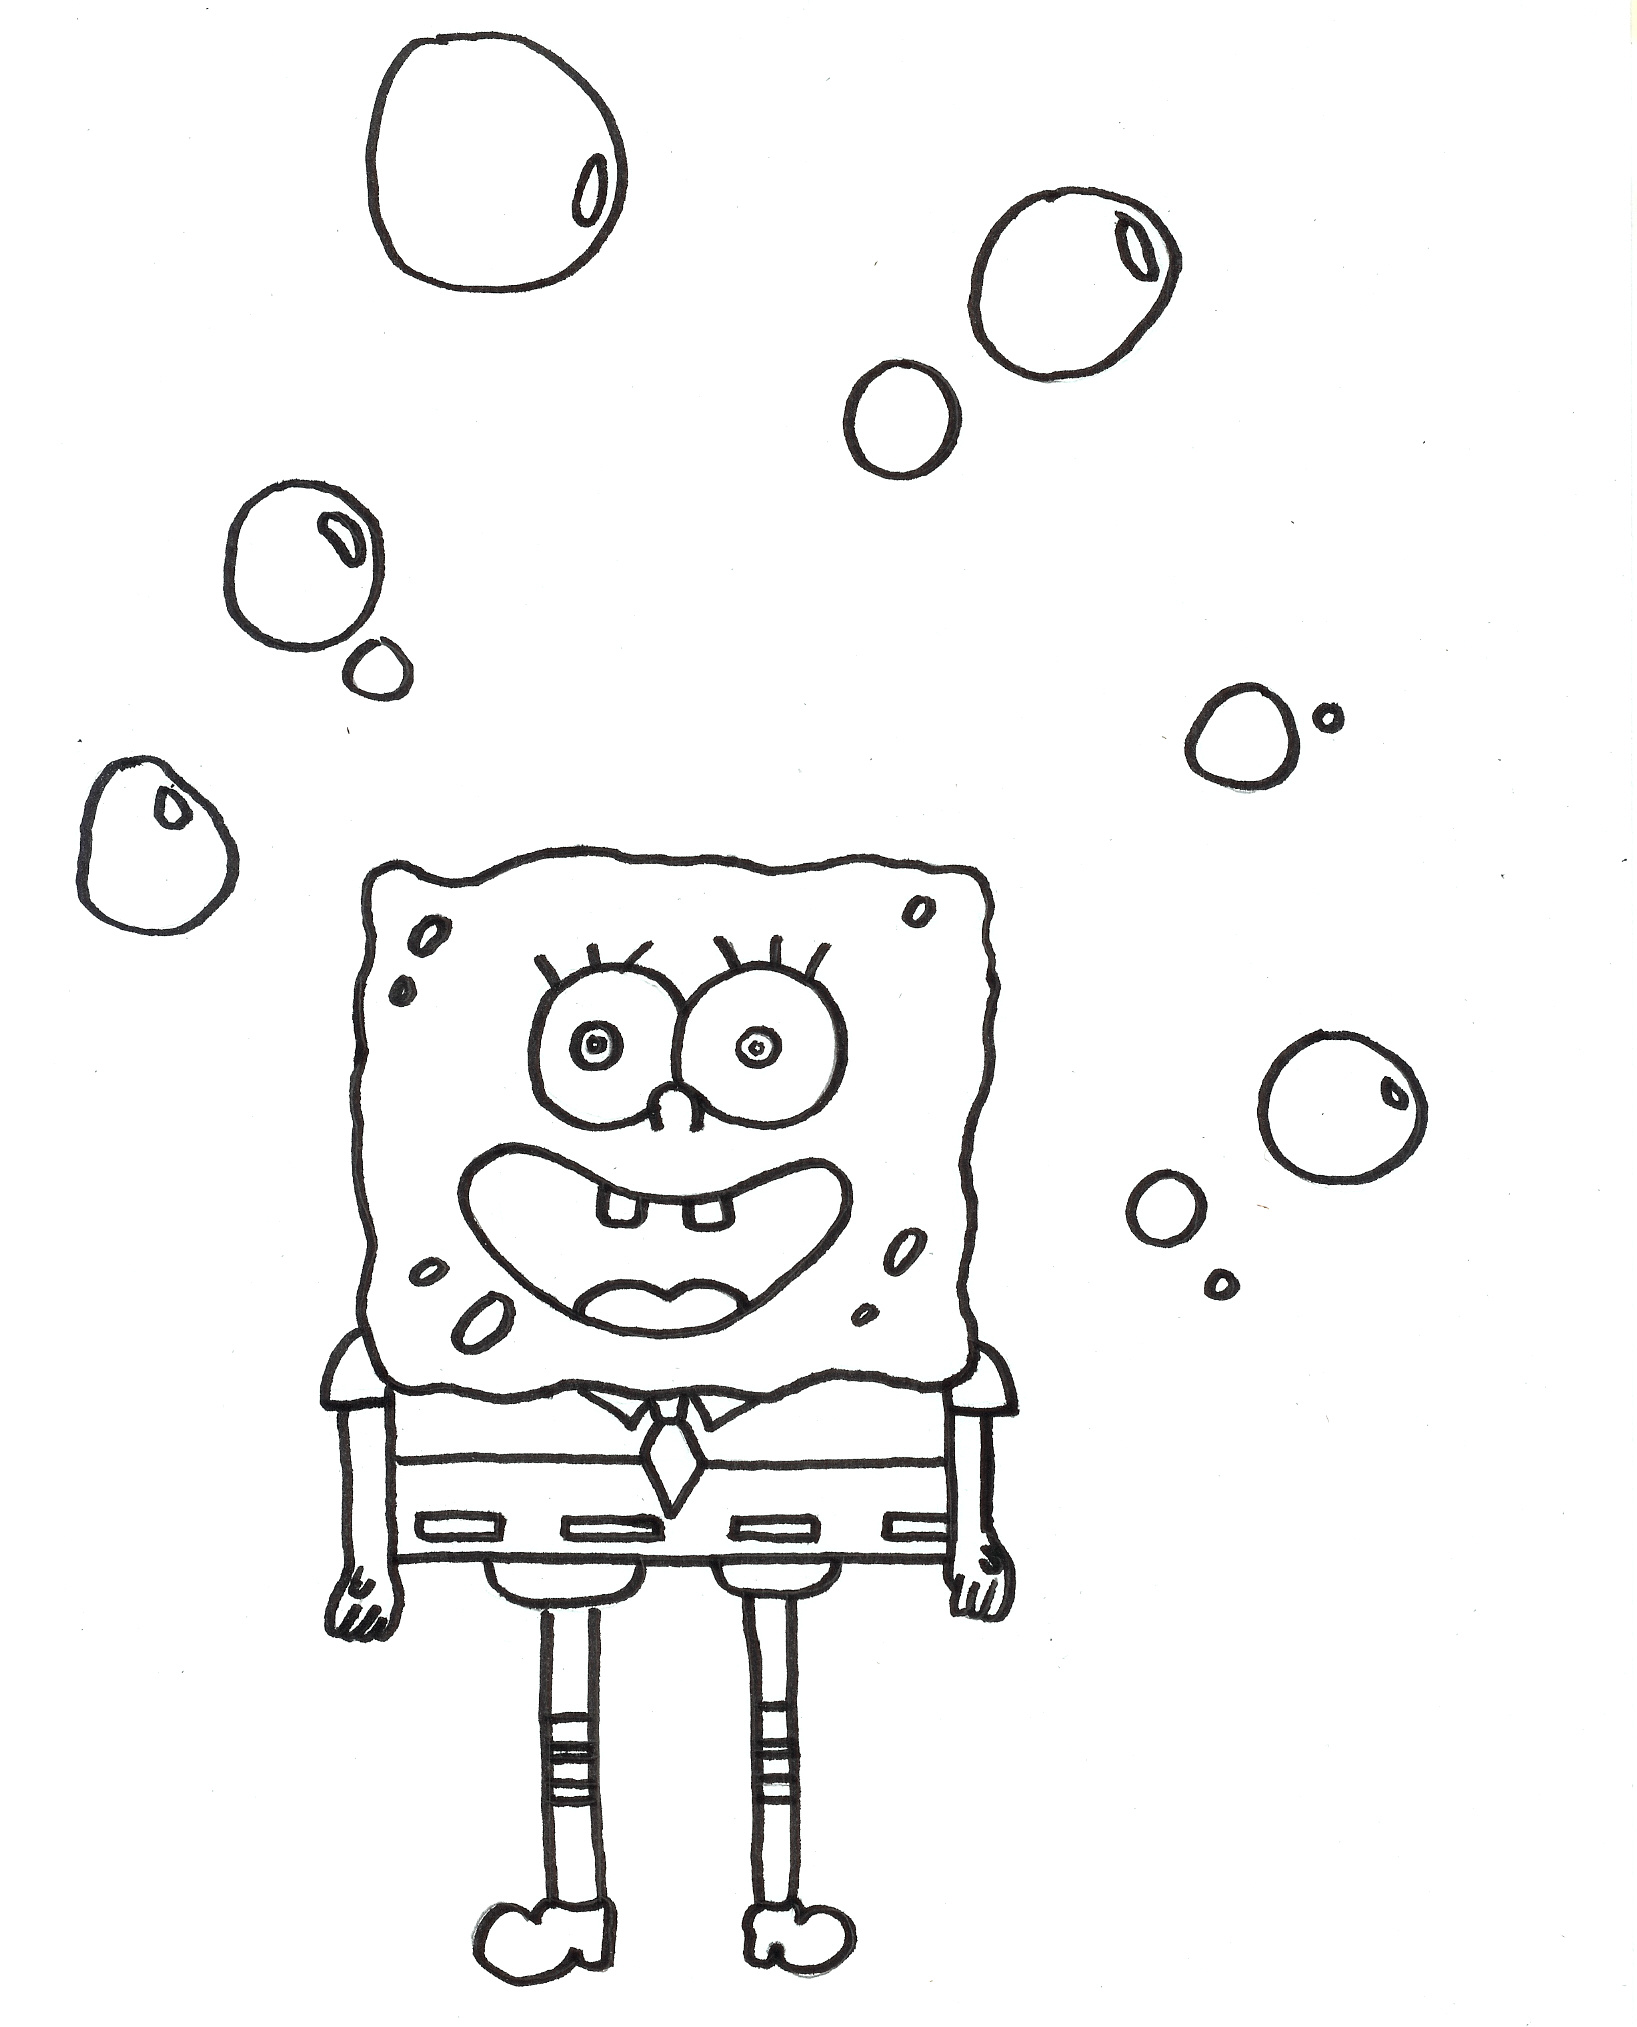 Malvorlagen - Ausmalbilder Spongebob  Ausmalbilder Fernsehen zum